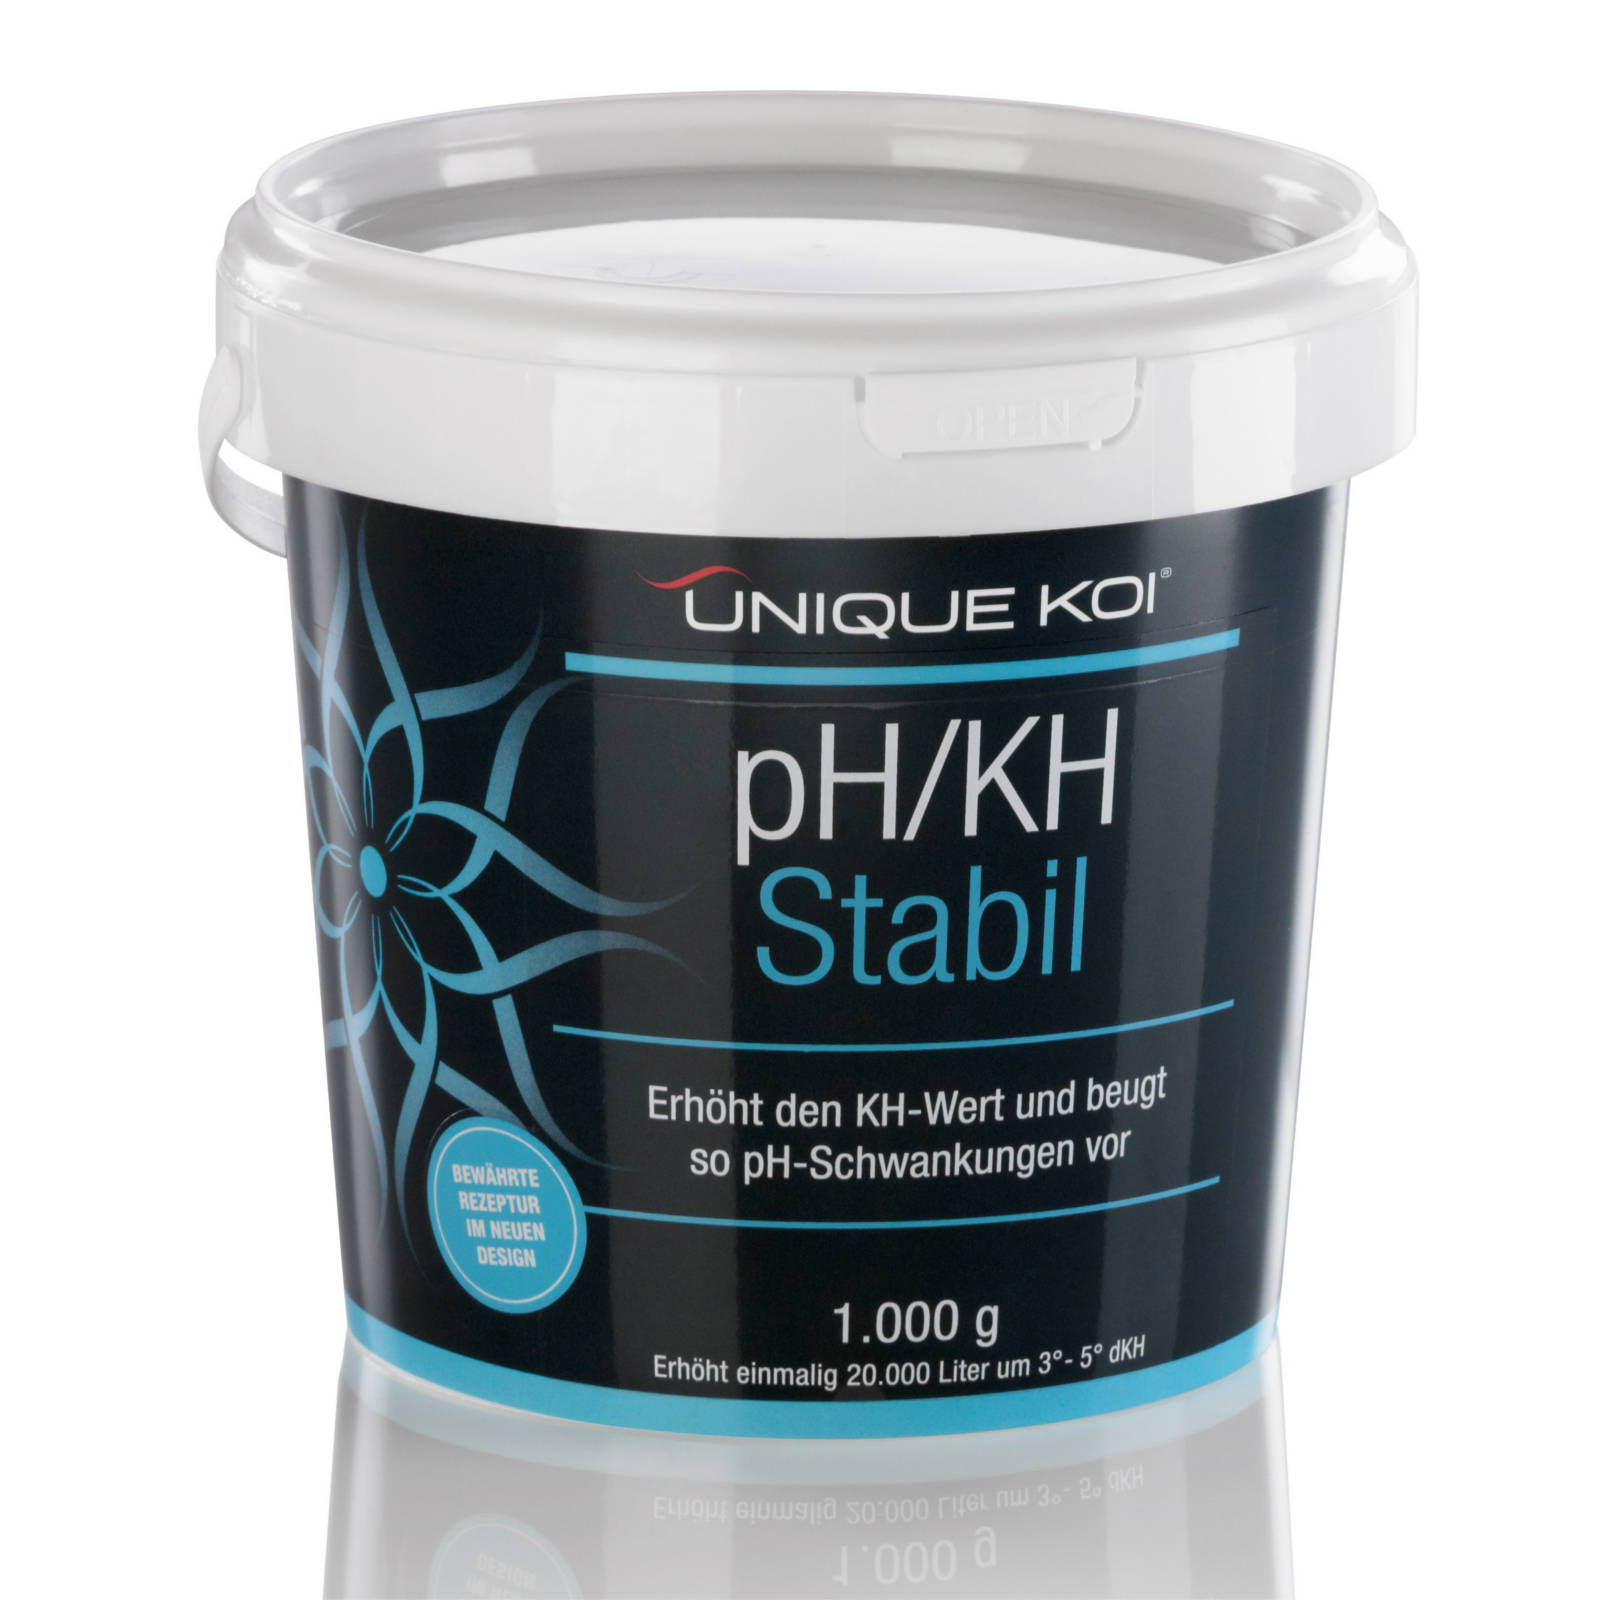 Unique Koi pH/KH Stabil Erhöht den KH-Wert und beugt so pH-Schwankungen vor 3000g für 60000l